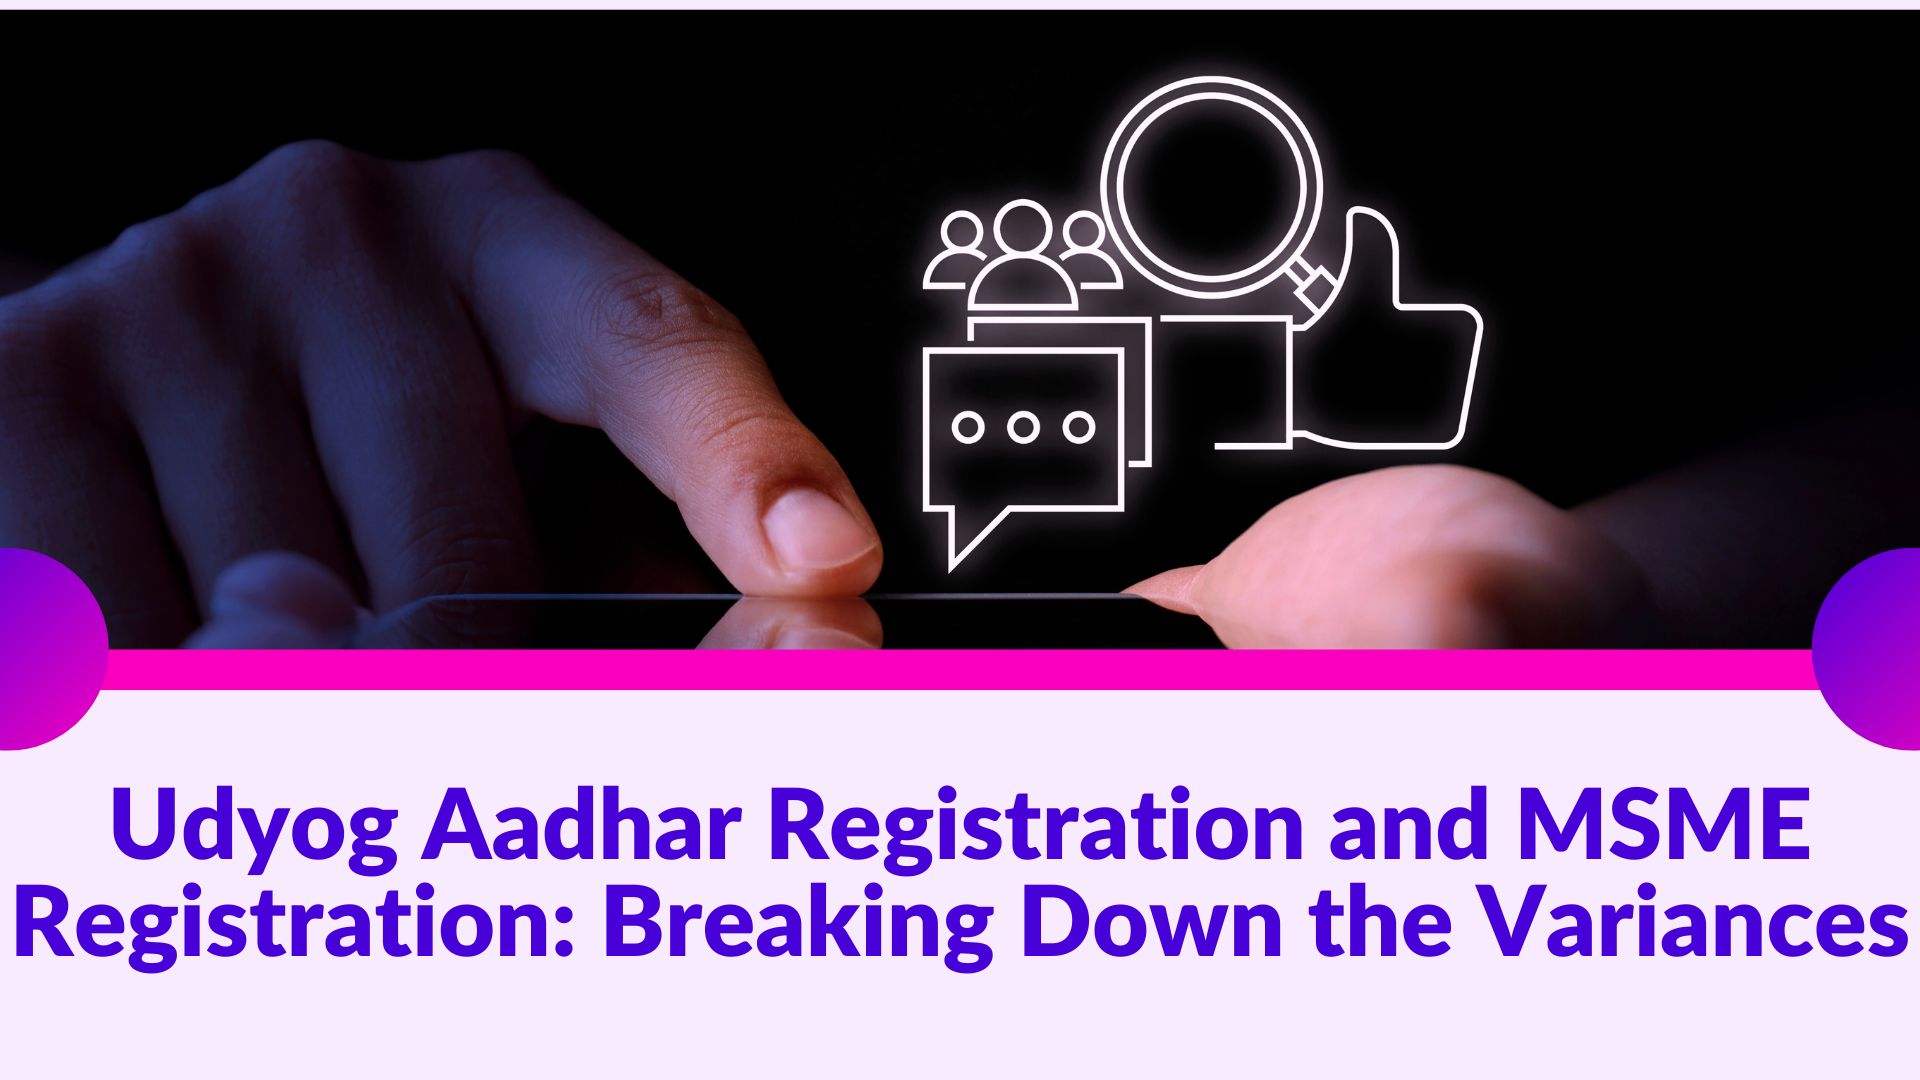 Udyog Aadhar Registration and MSME Registration